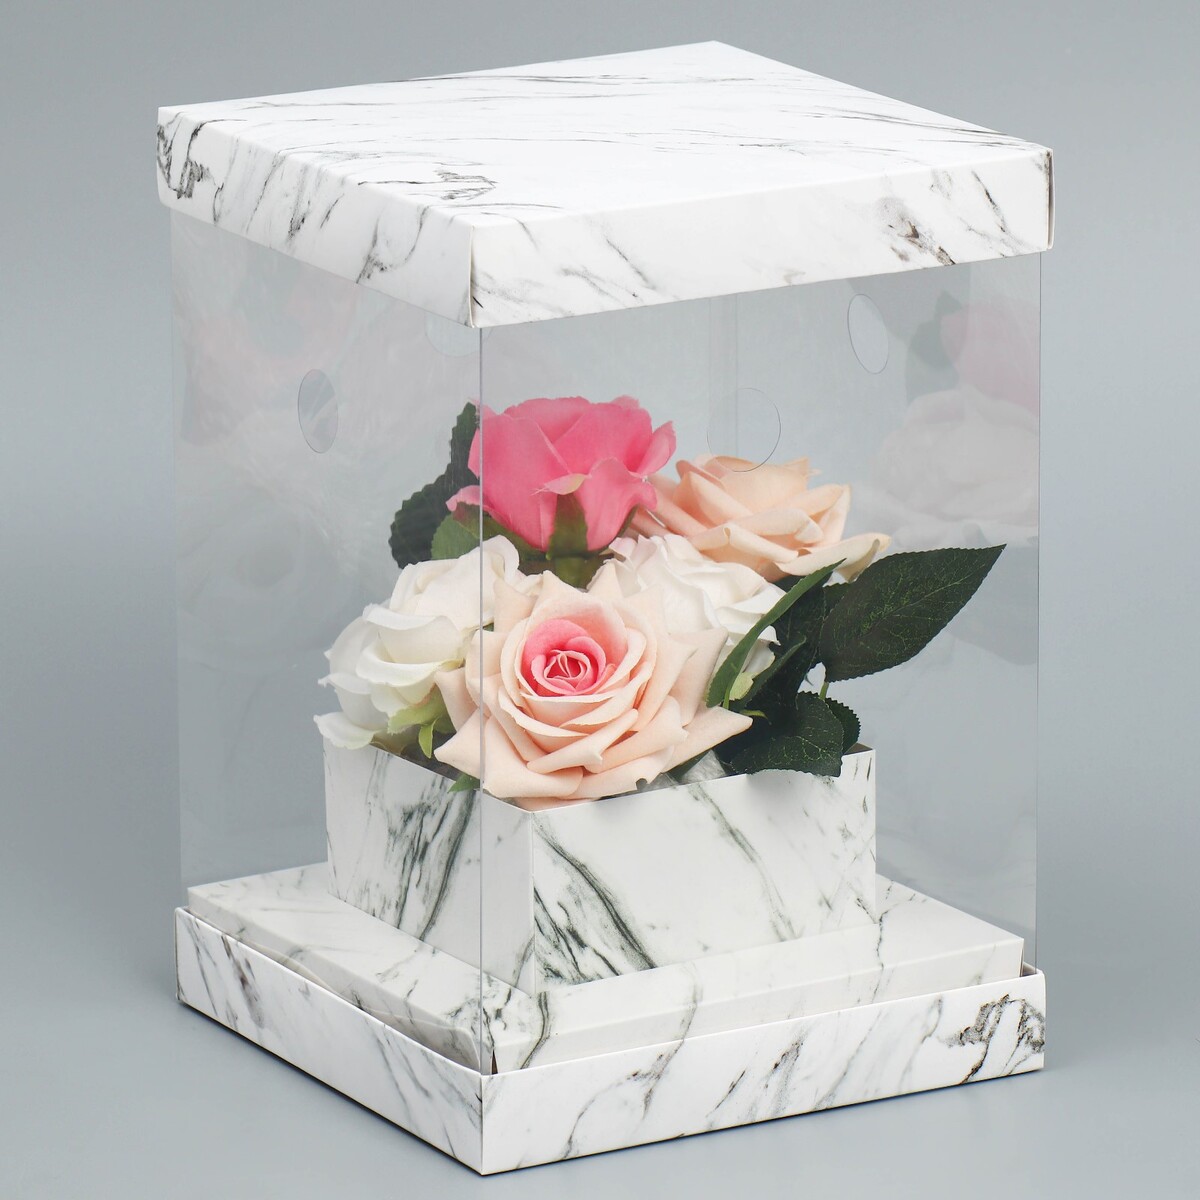 Коробка подарочная для цветов с вазой и pvc окнами складная, упаковка, коробка для ов с вазой и pvc окнами складная красный 23 х 30 х 23 см